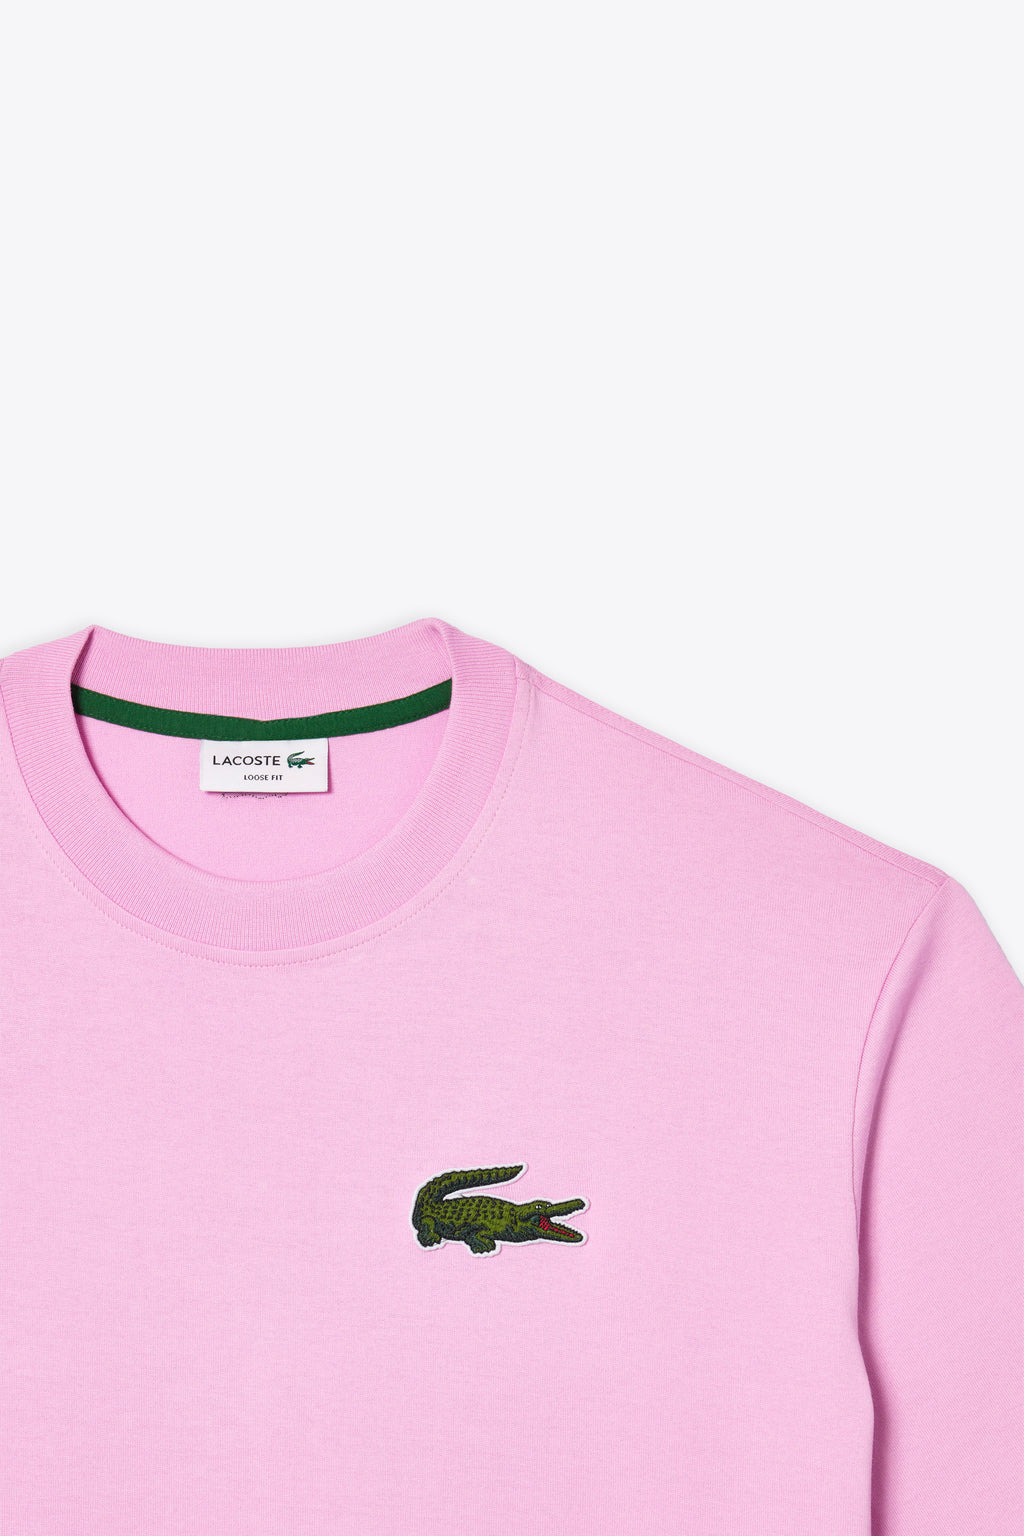 alt-image__T-shirt-rosa-con-logo-grande-al-petto